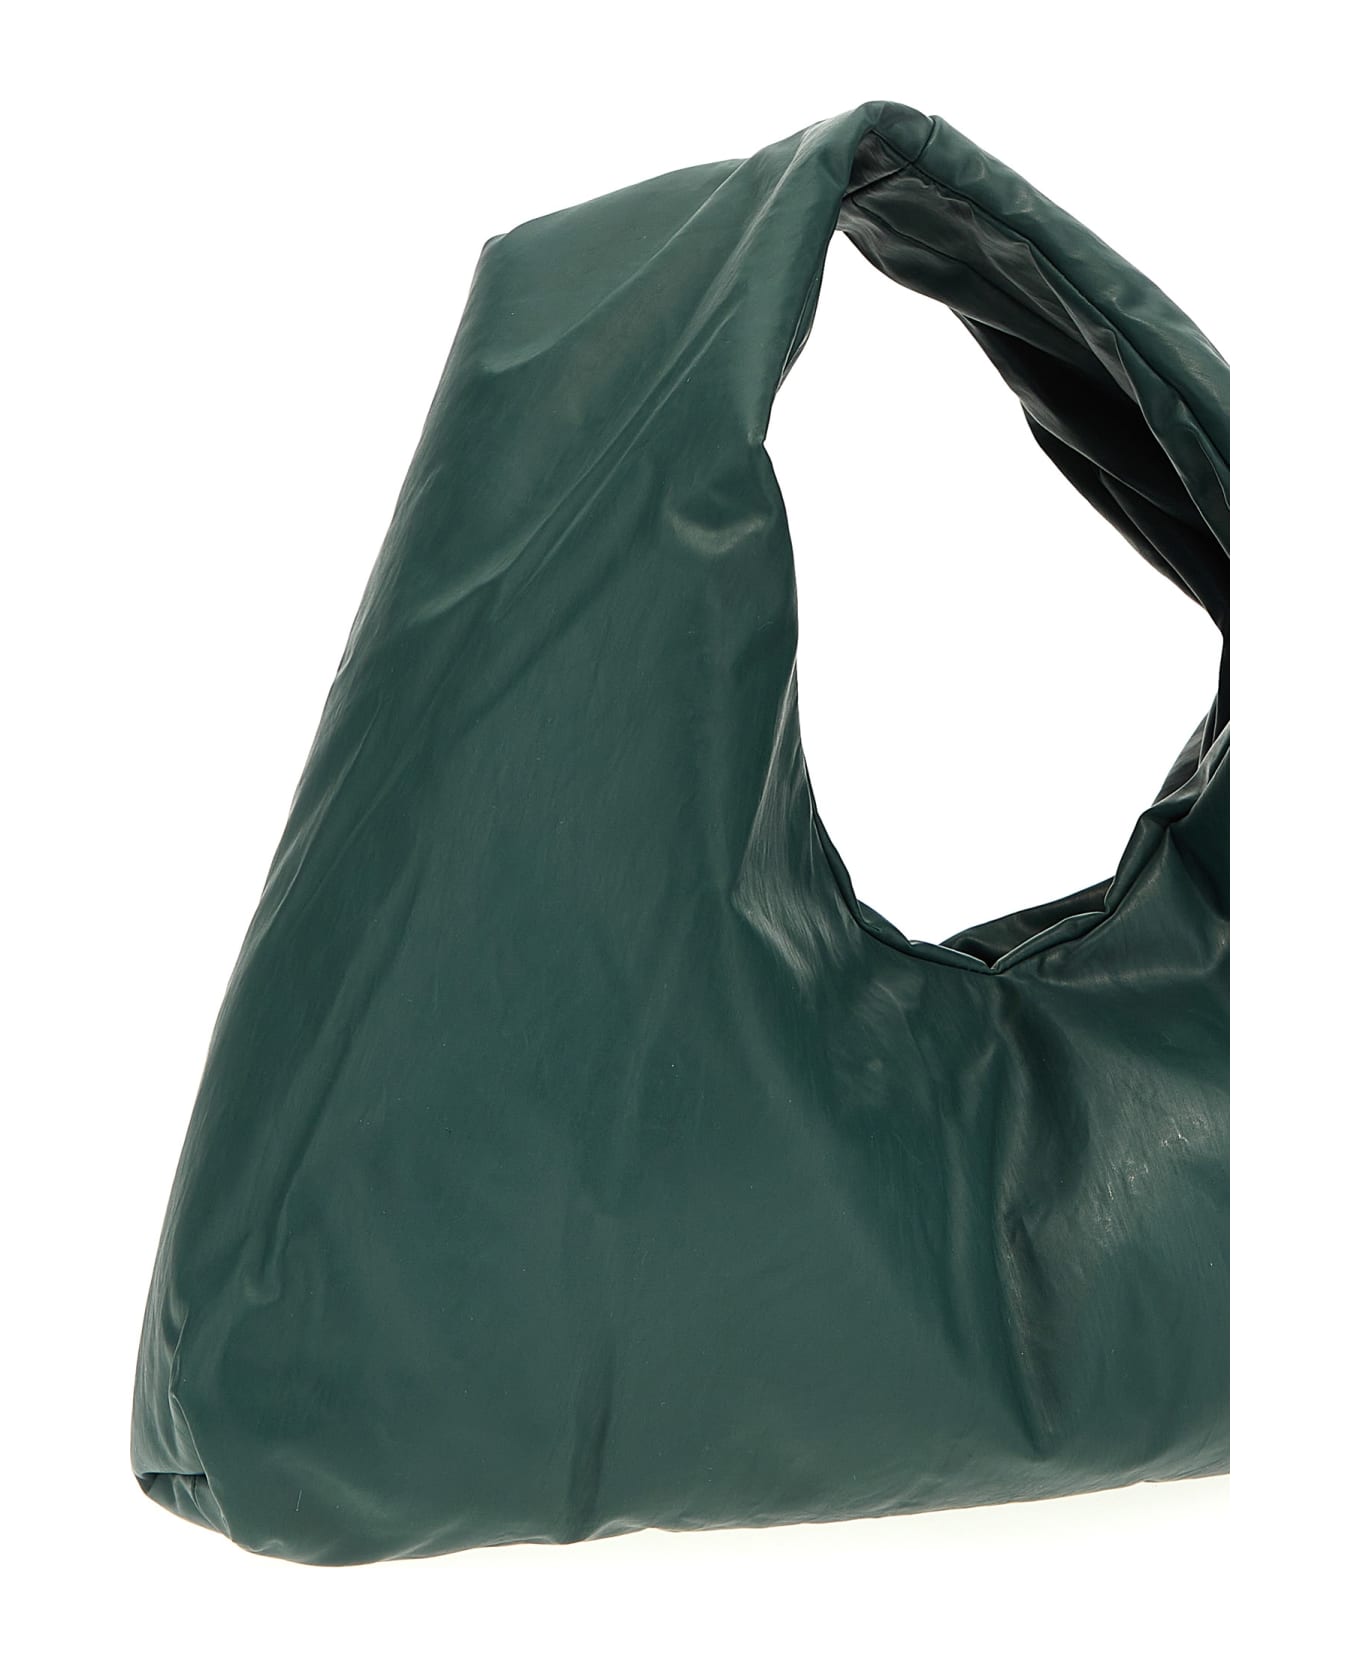 KASSL Editions 'anchor Small' Handbag - Green トートバッグ